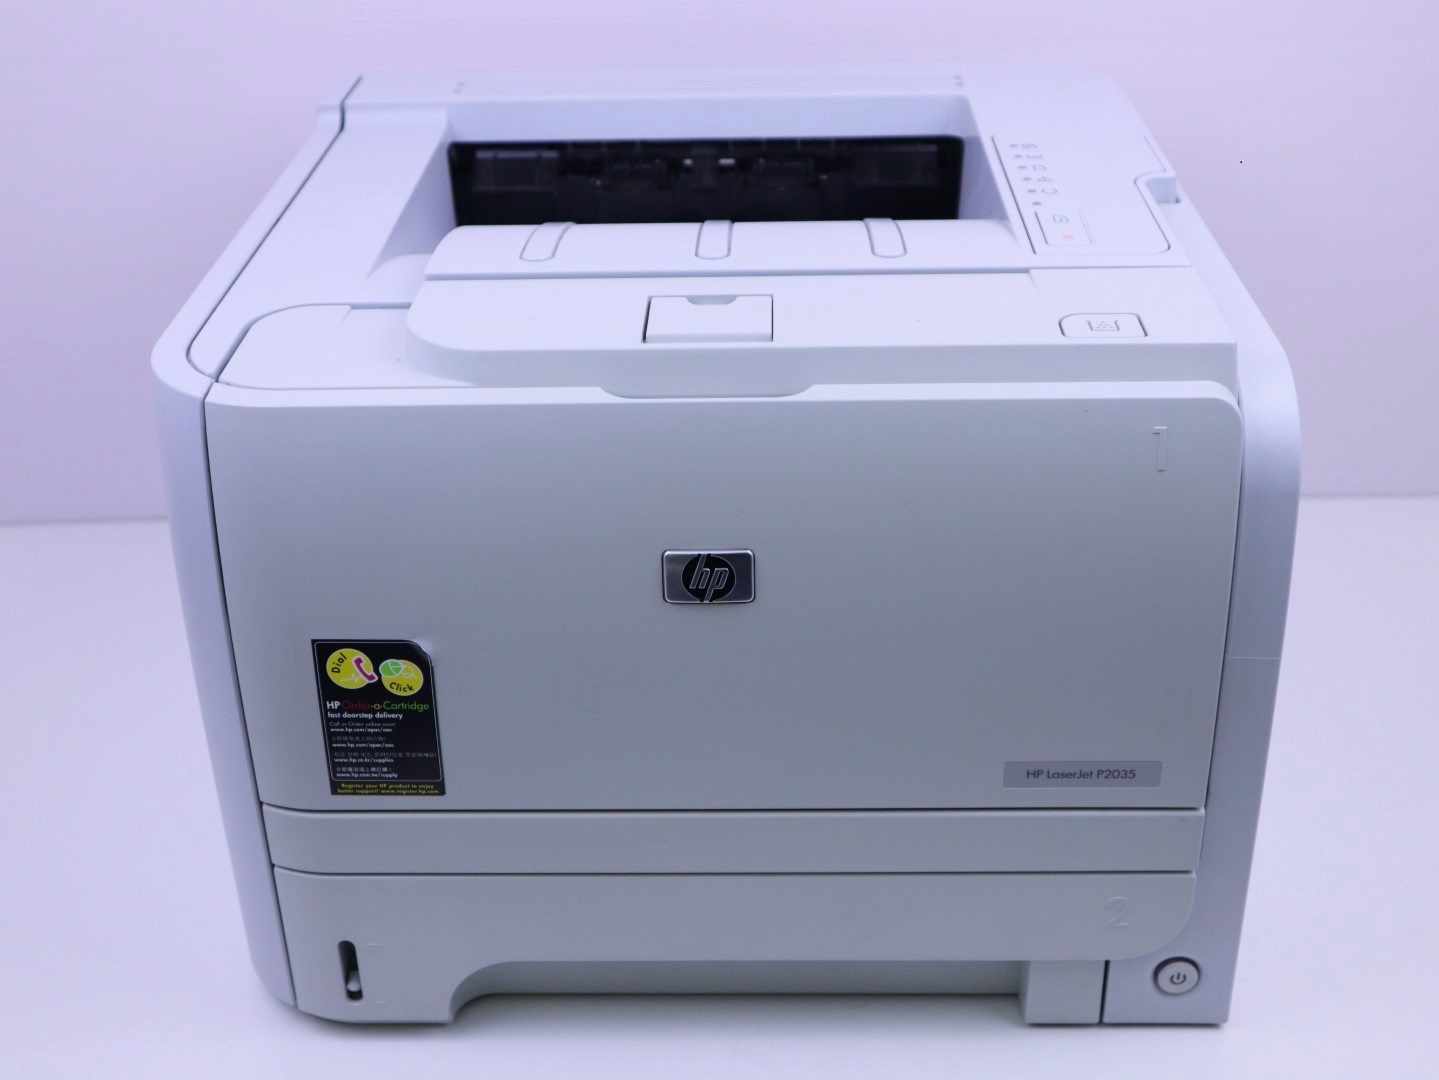 เครื่องปริ้นเตอร์เลเซอร์ ขาวดำ HP LaserJet P2035 Printer